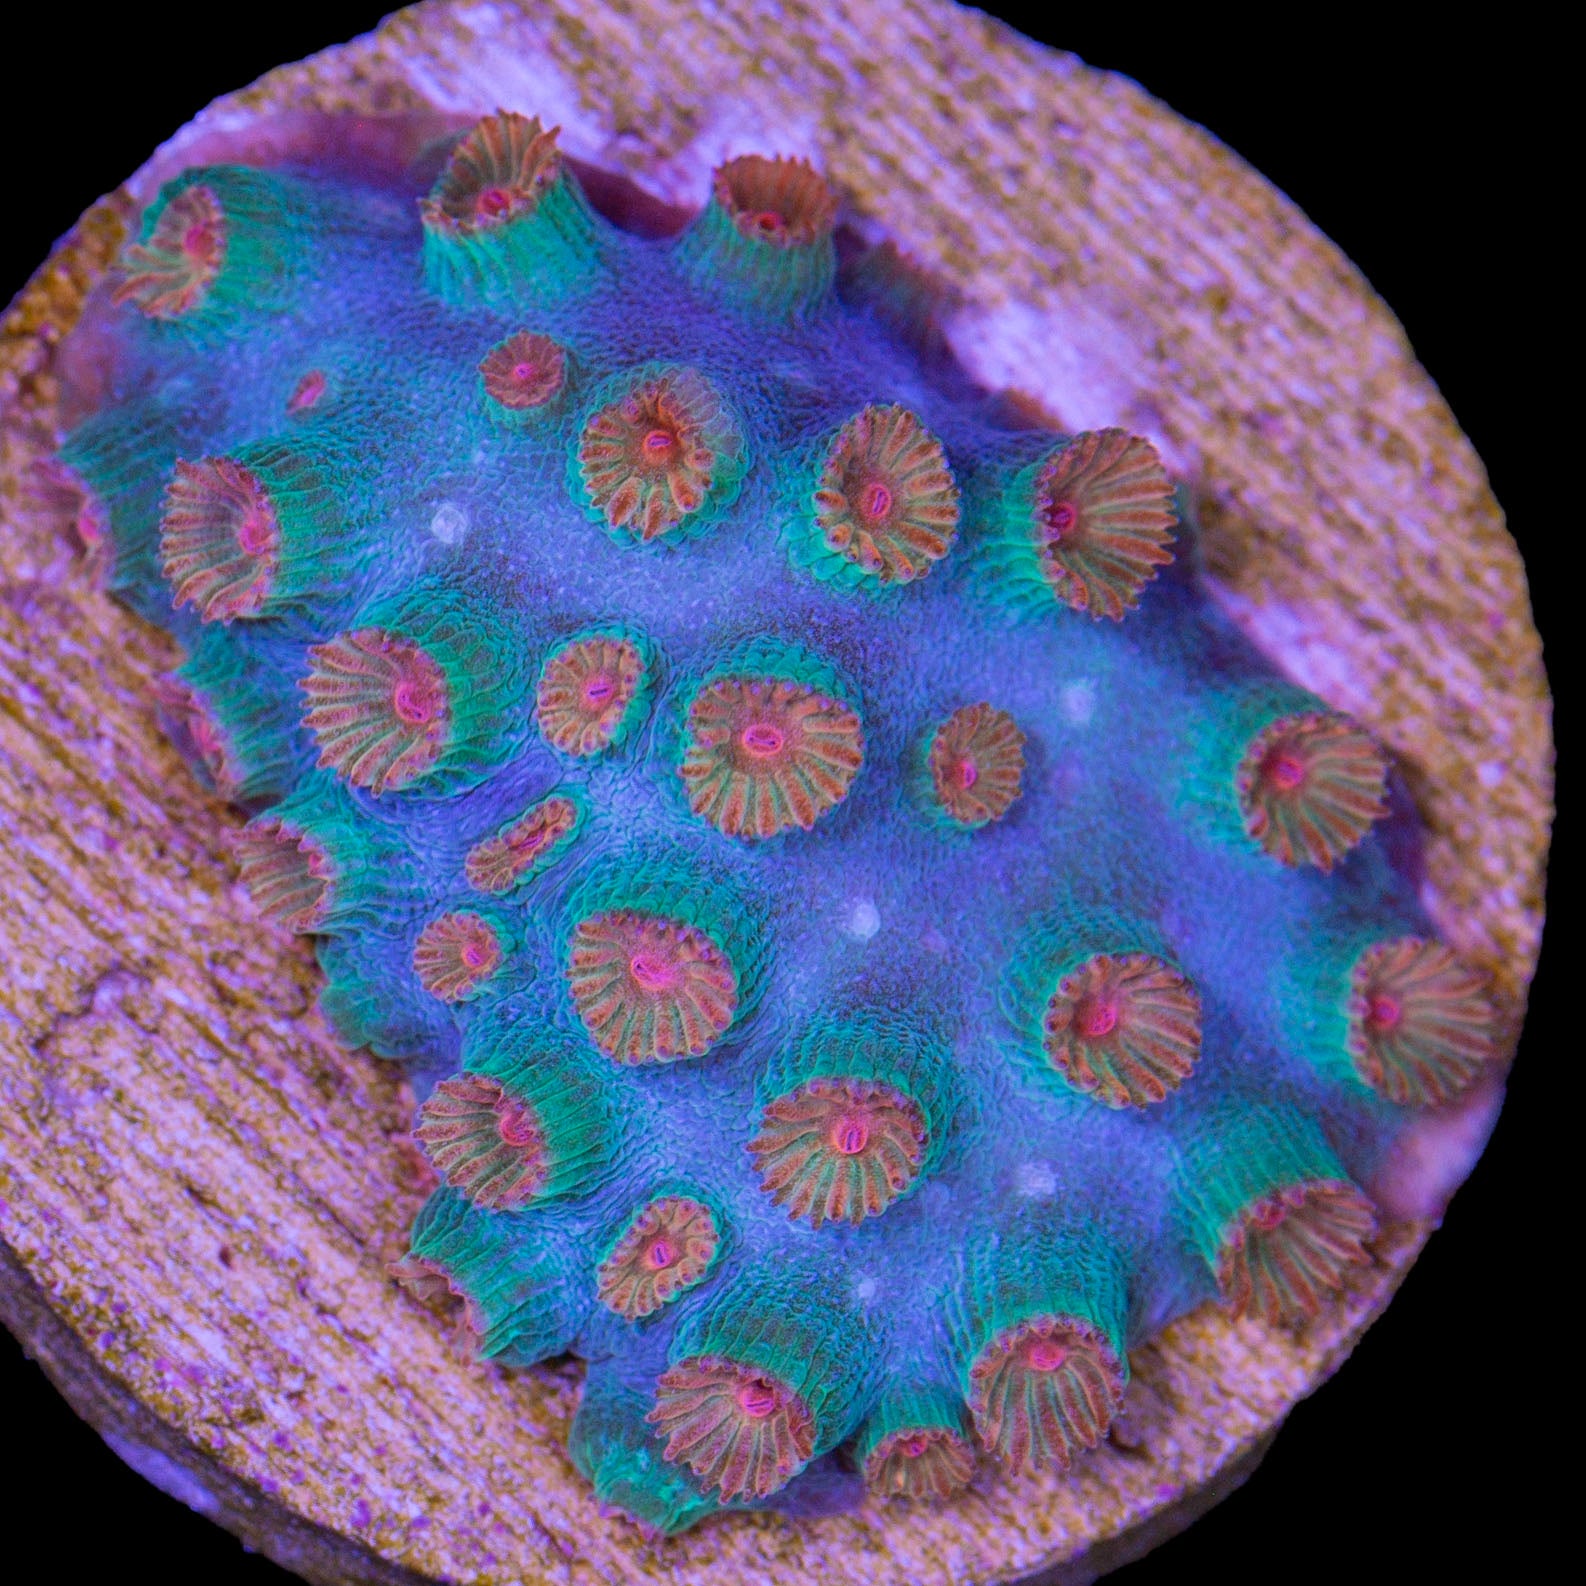 Meteor Shower Cyphastrea Coral